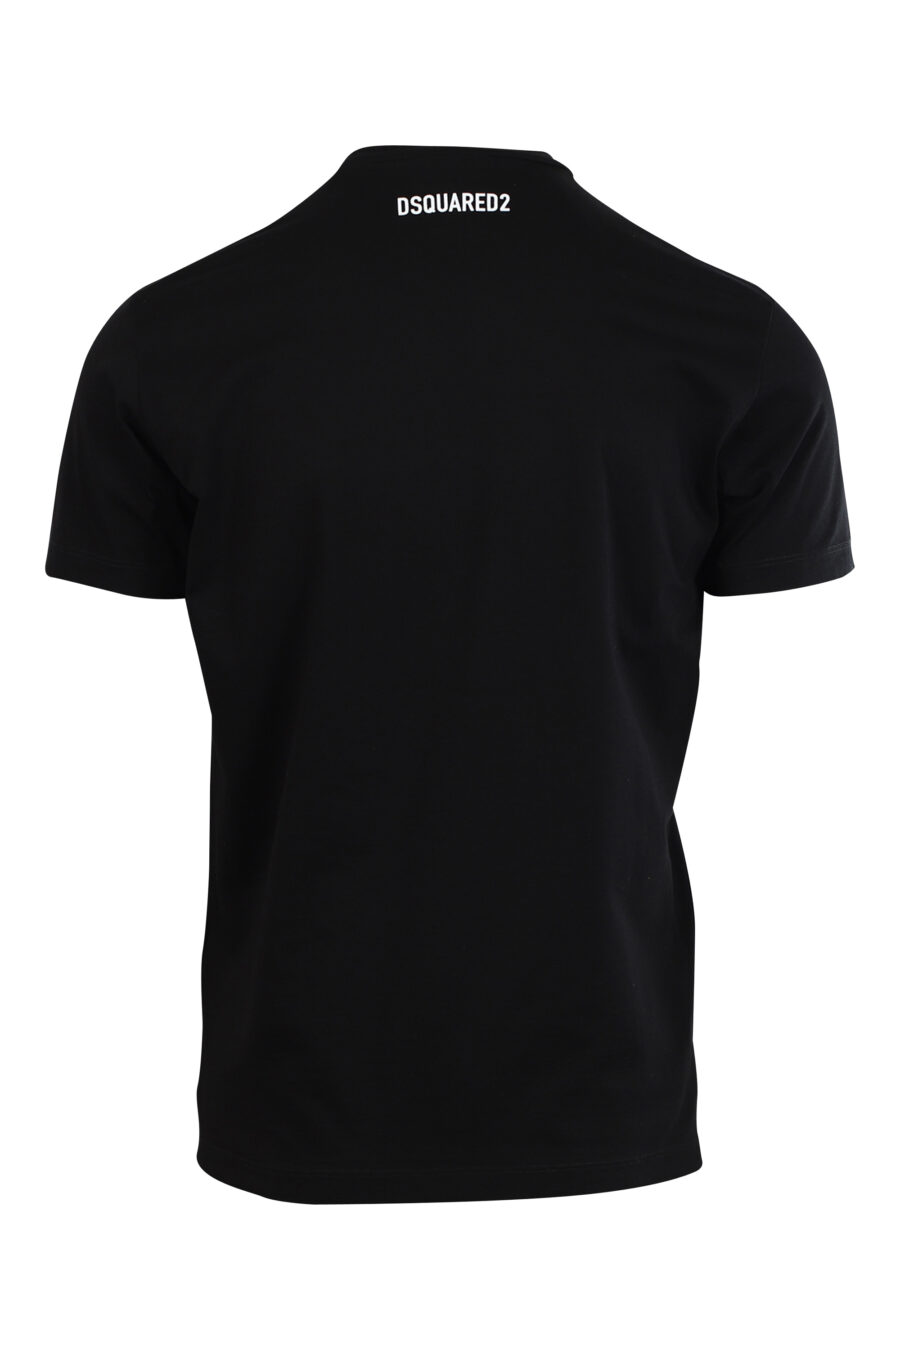 T-shirt noir avec maxilogo chien "Pixeled" - 8052134980774 2